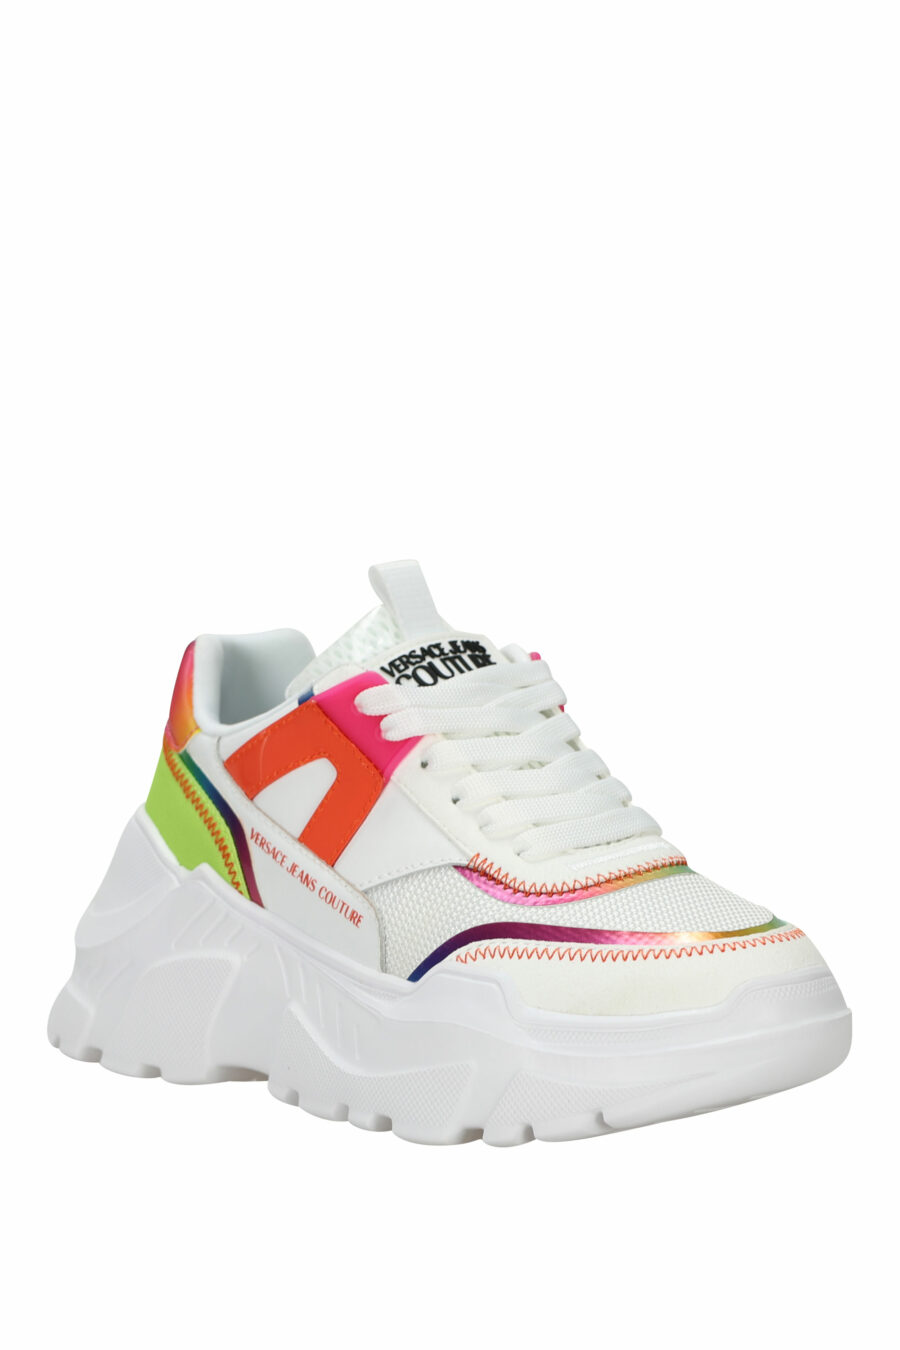 Zapatillas blancas multicolor con plataforma y logo - 8052019604870 1